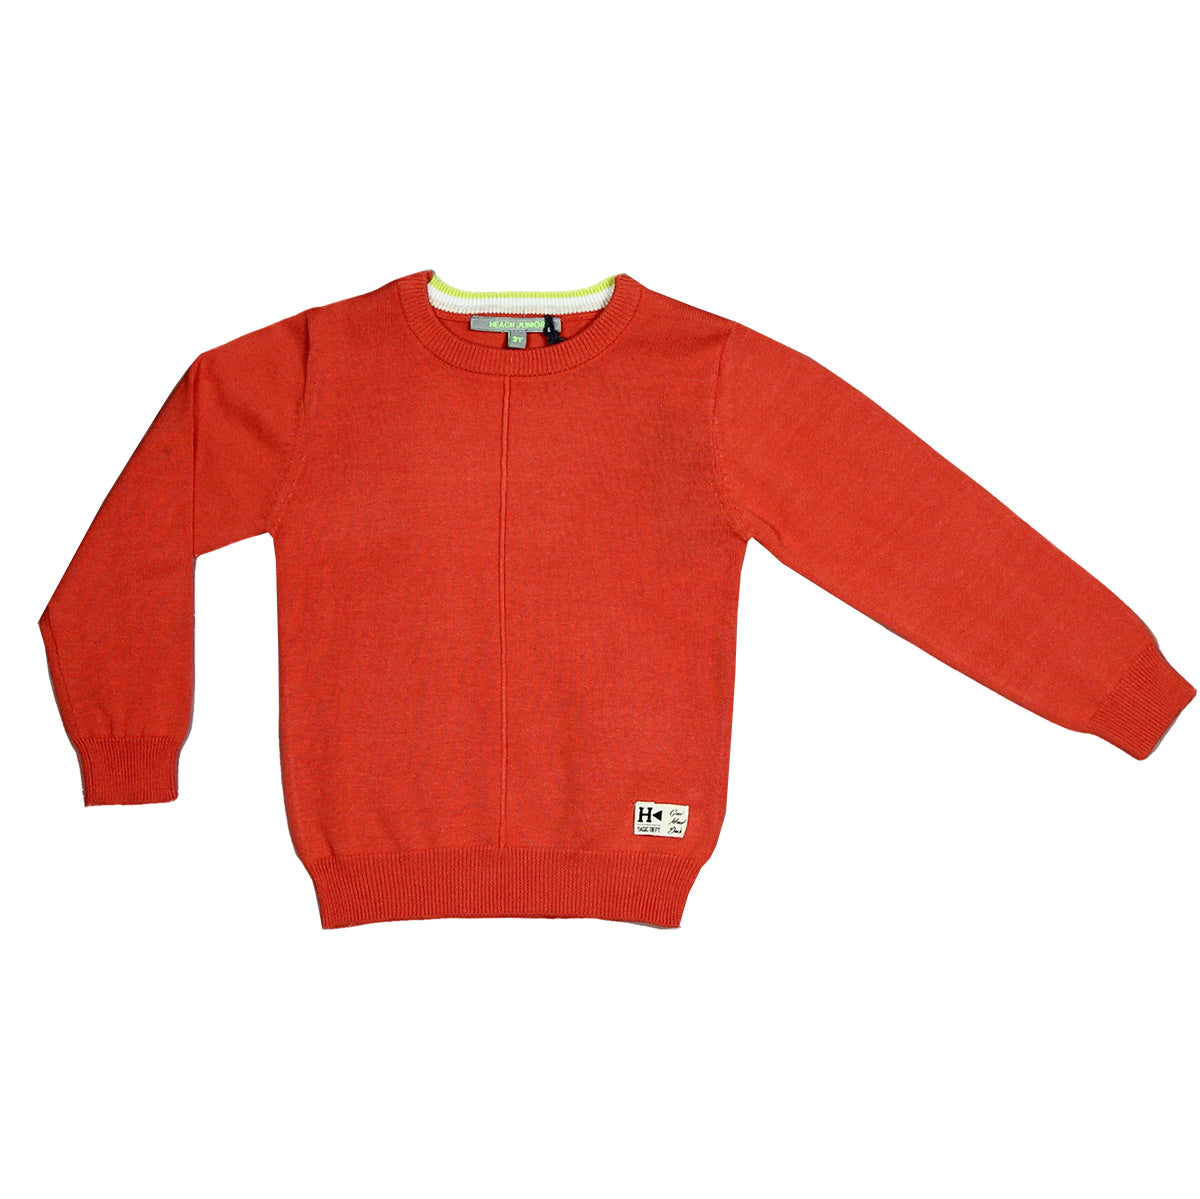 Pullover aus der Kinderkleidungslinie Silvian Heach Kids, einfarbig, mit kontrastfarbenen Einsätz...